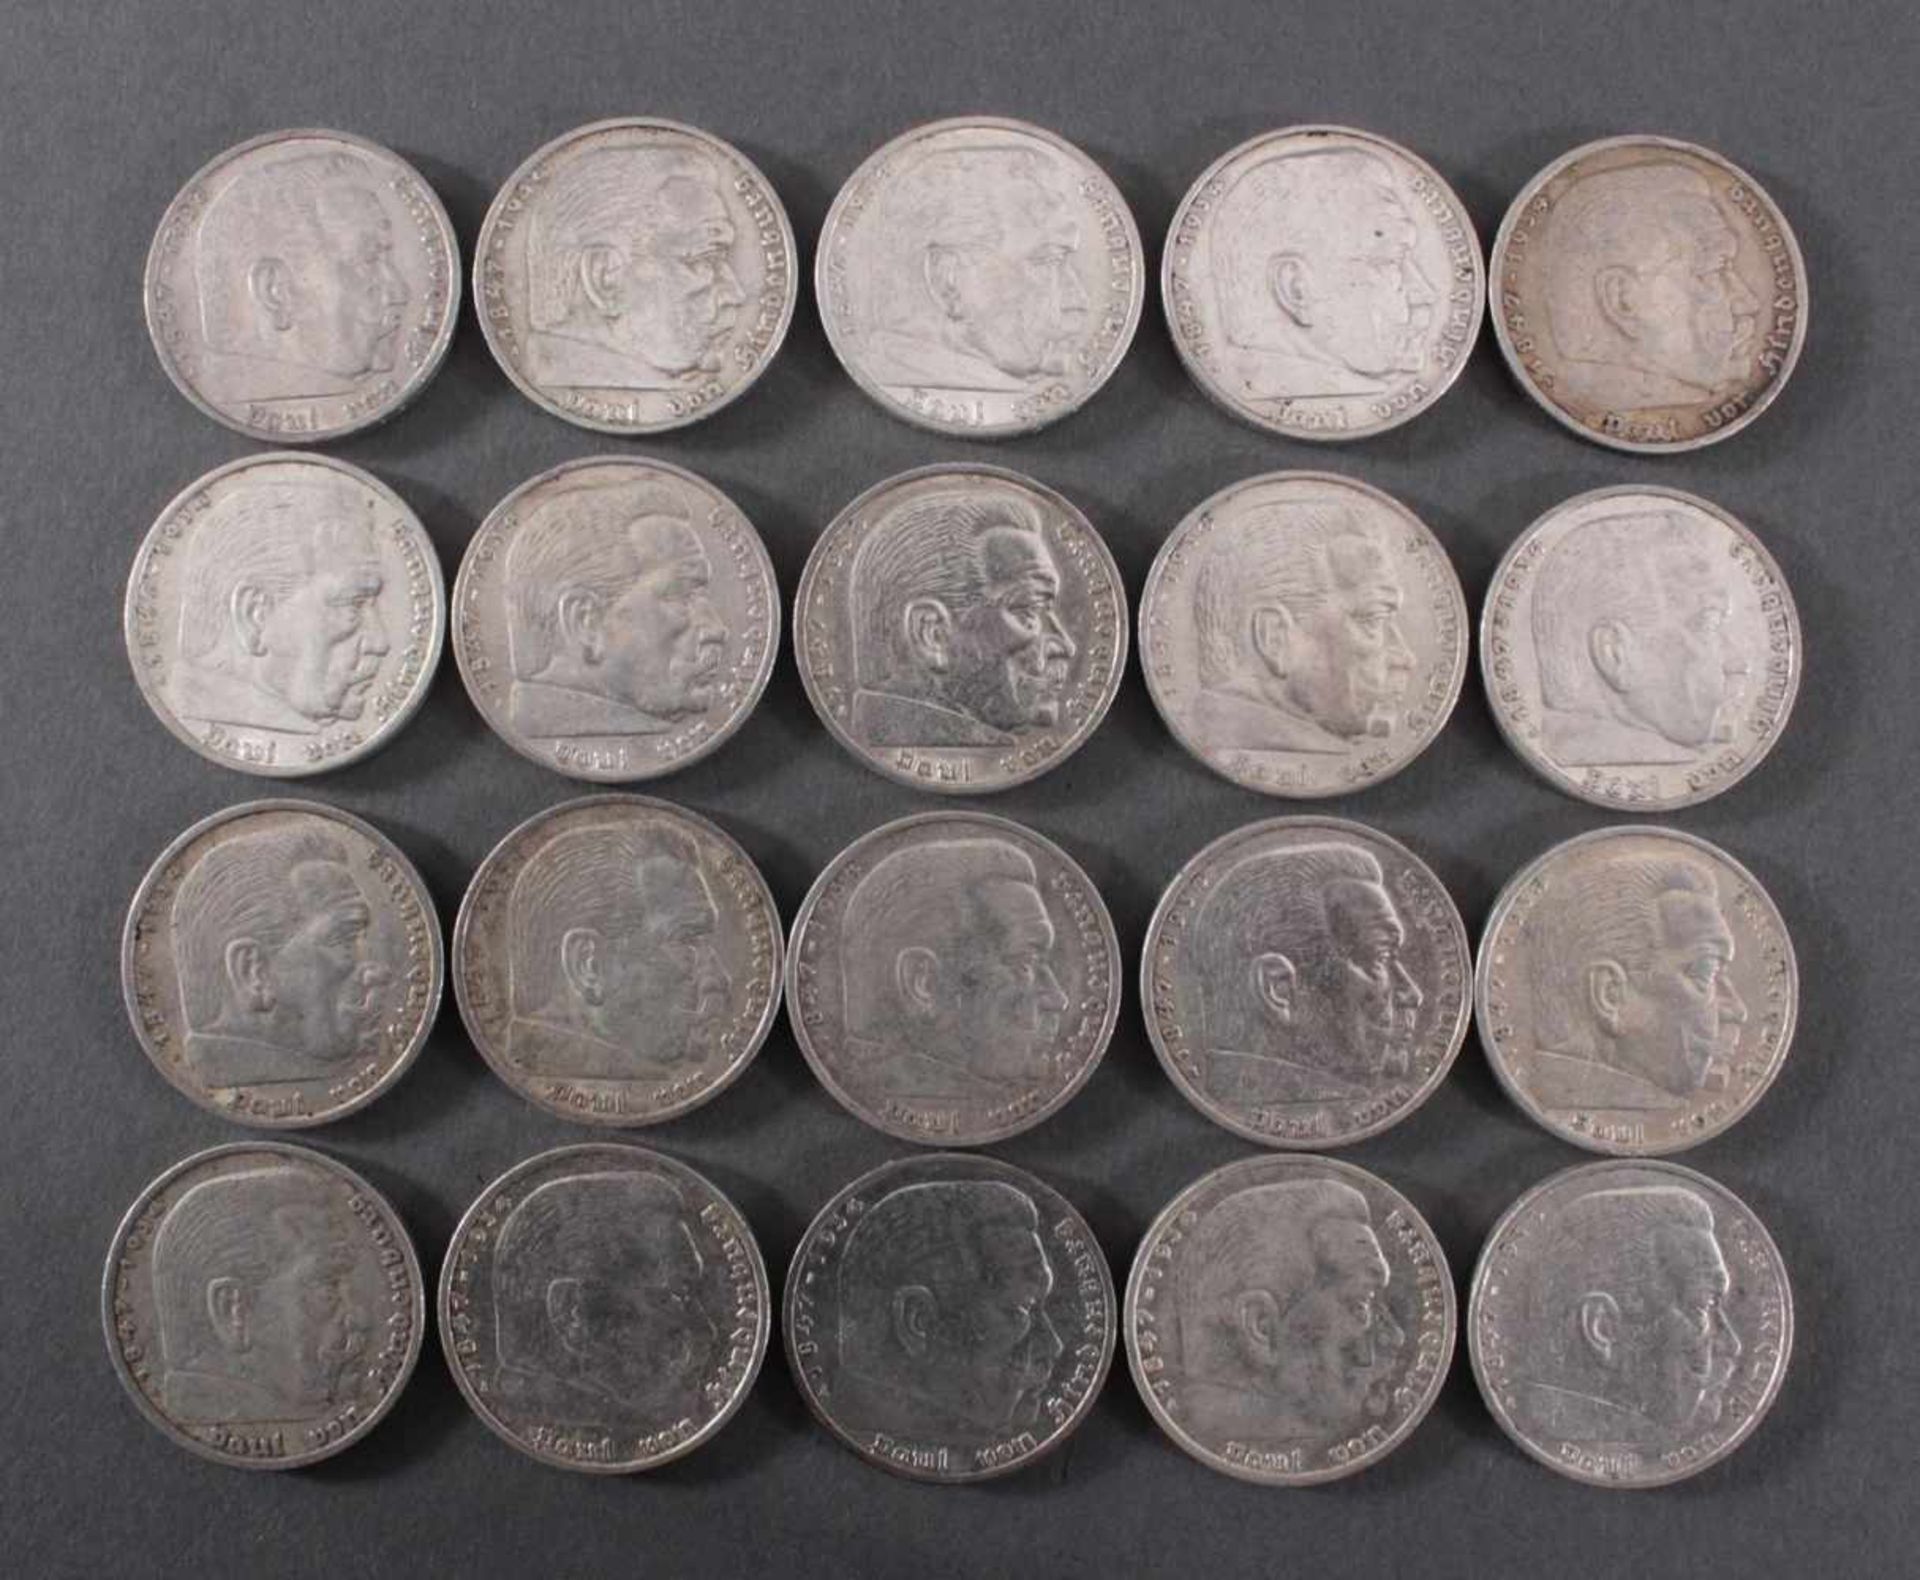 Deutsches Reich, 20x 5 ReichsmarkSilber, 14x 5 Reichsmark 1935 A und 6x 5 Reichsmark 1935 F